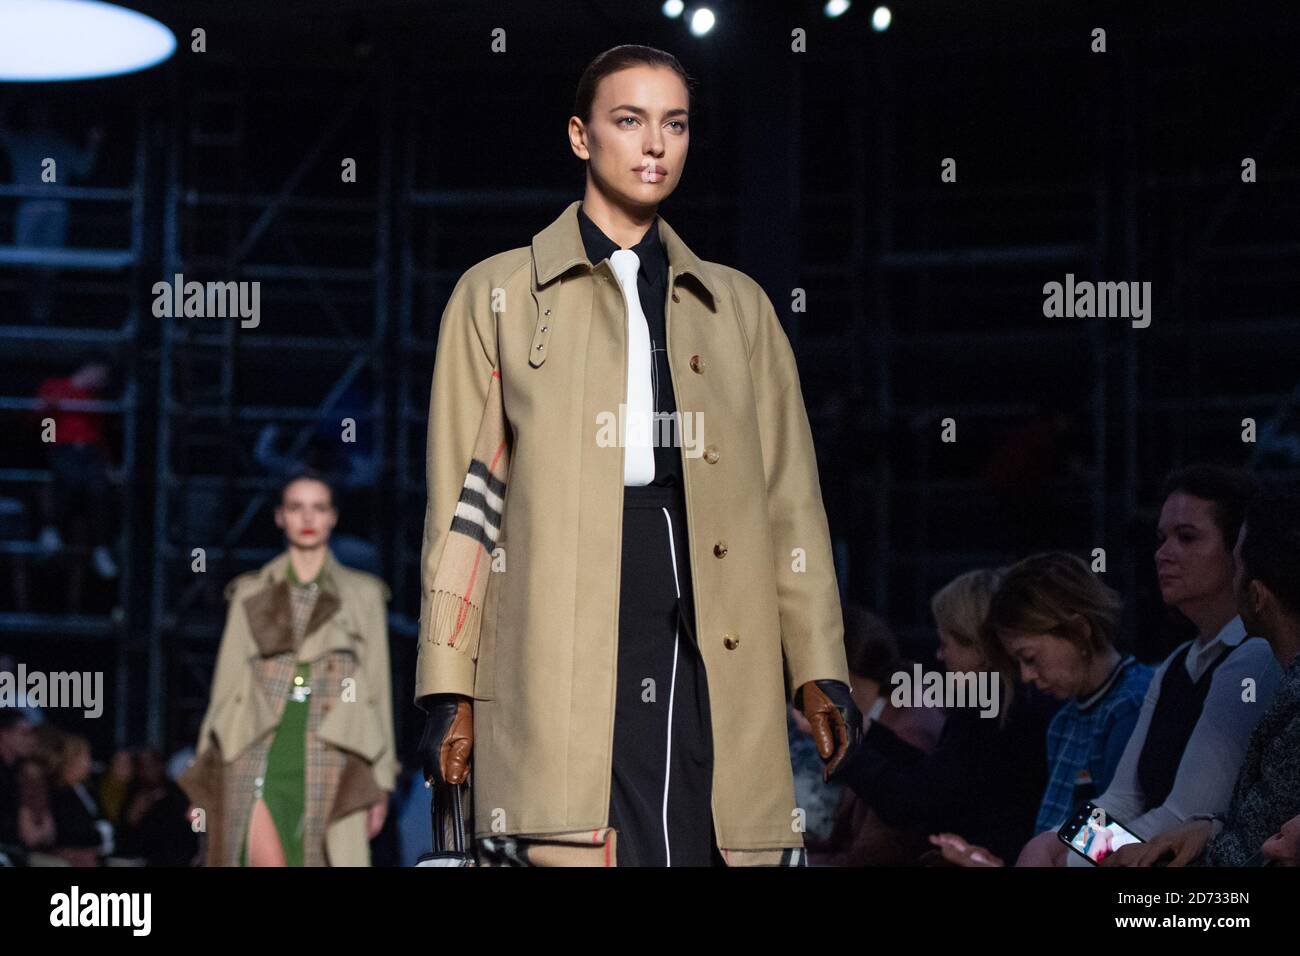 Irina Shayk en la pasarela durante el desfile de moda Burberry, celebrado en Tate Modern, como parte de la Semana de la Moda de Londres A/W 2019. Foto fecha: Domingo 17 de febrero de 2018. El crédito de la foto debe decir: Matt Crossick/Empics Foto de stock